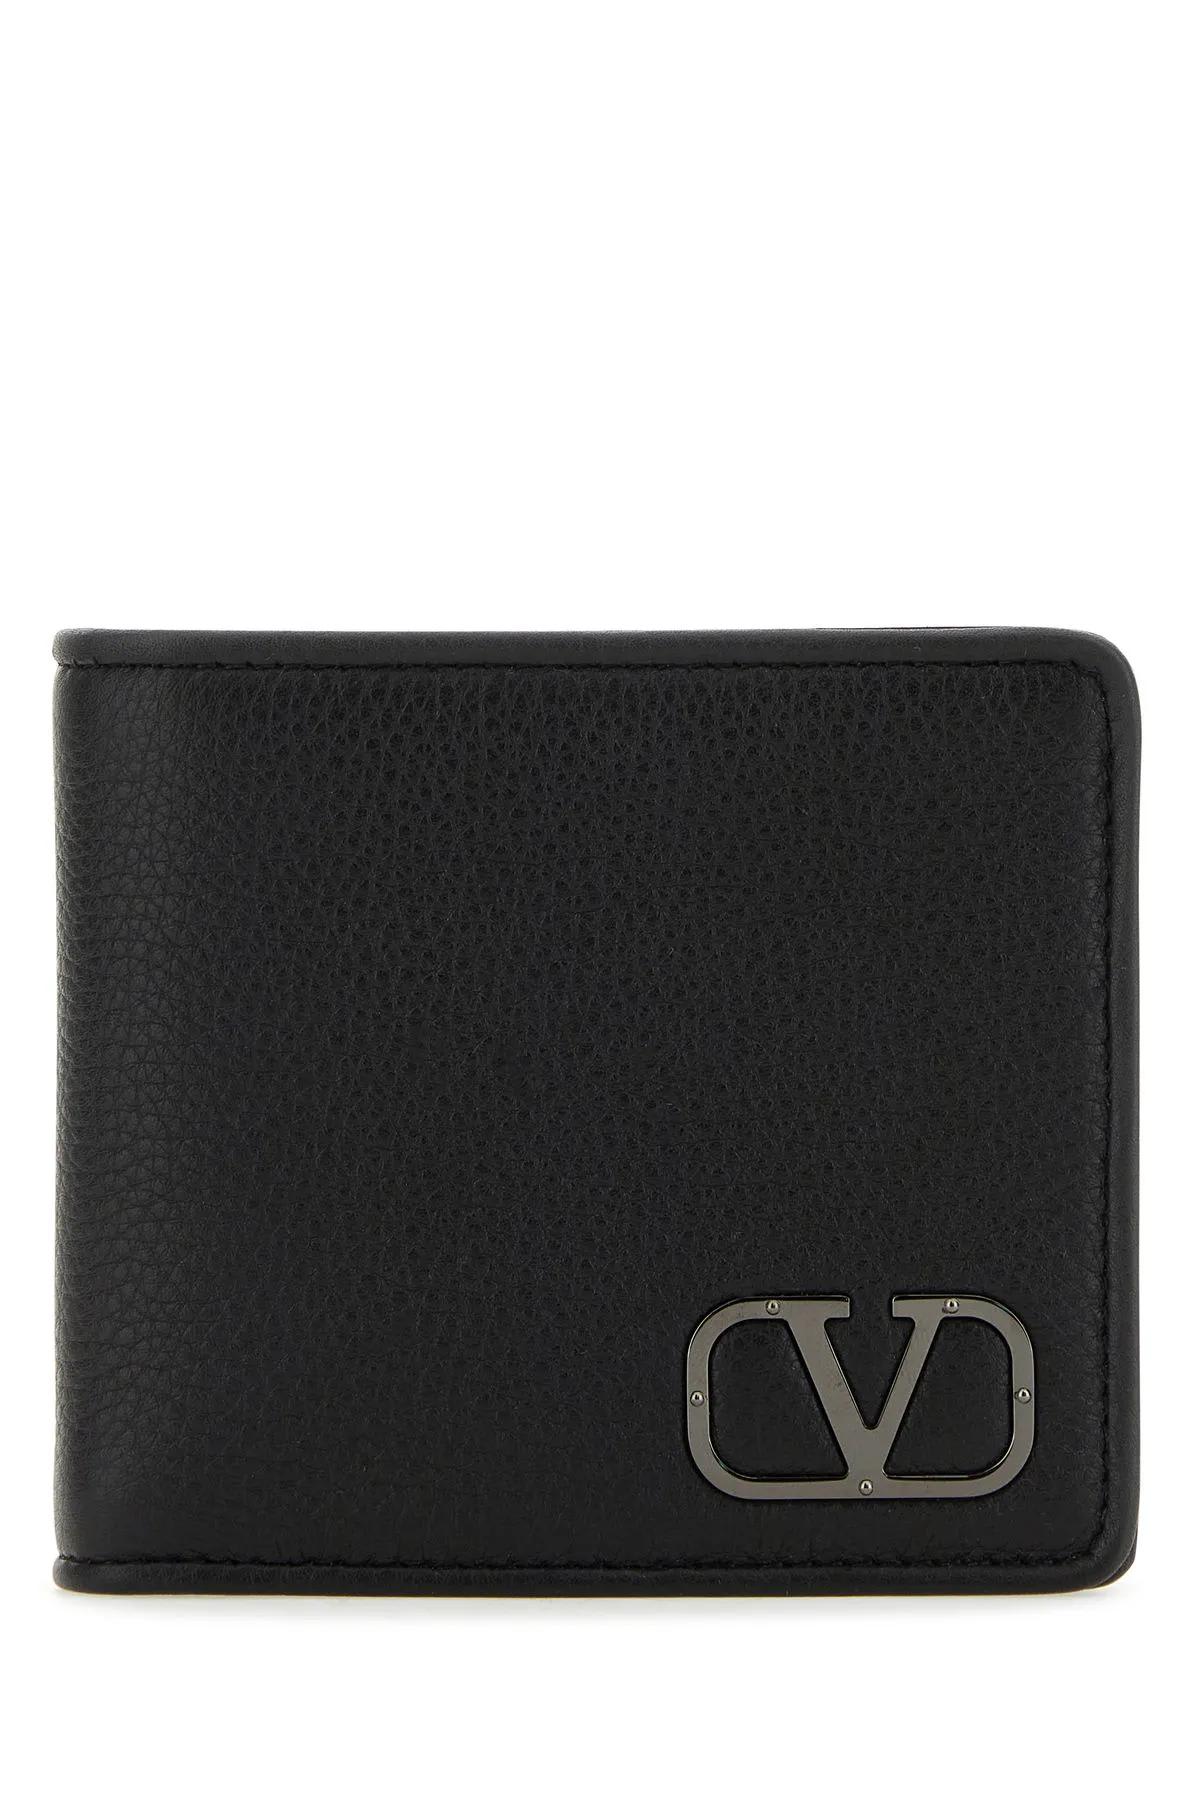 Valentino Garavani Black Leather Vlogo Wallet In Nero